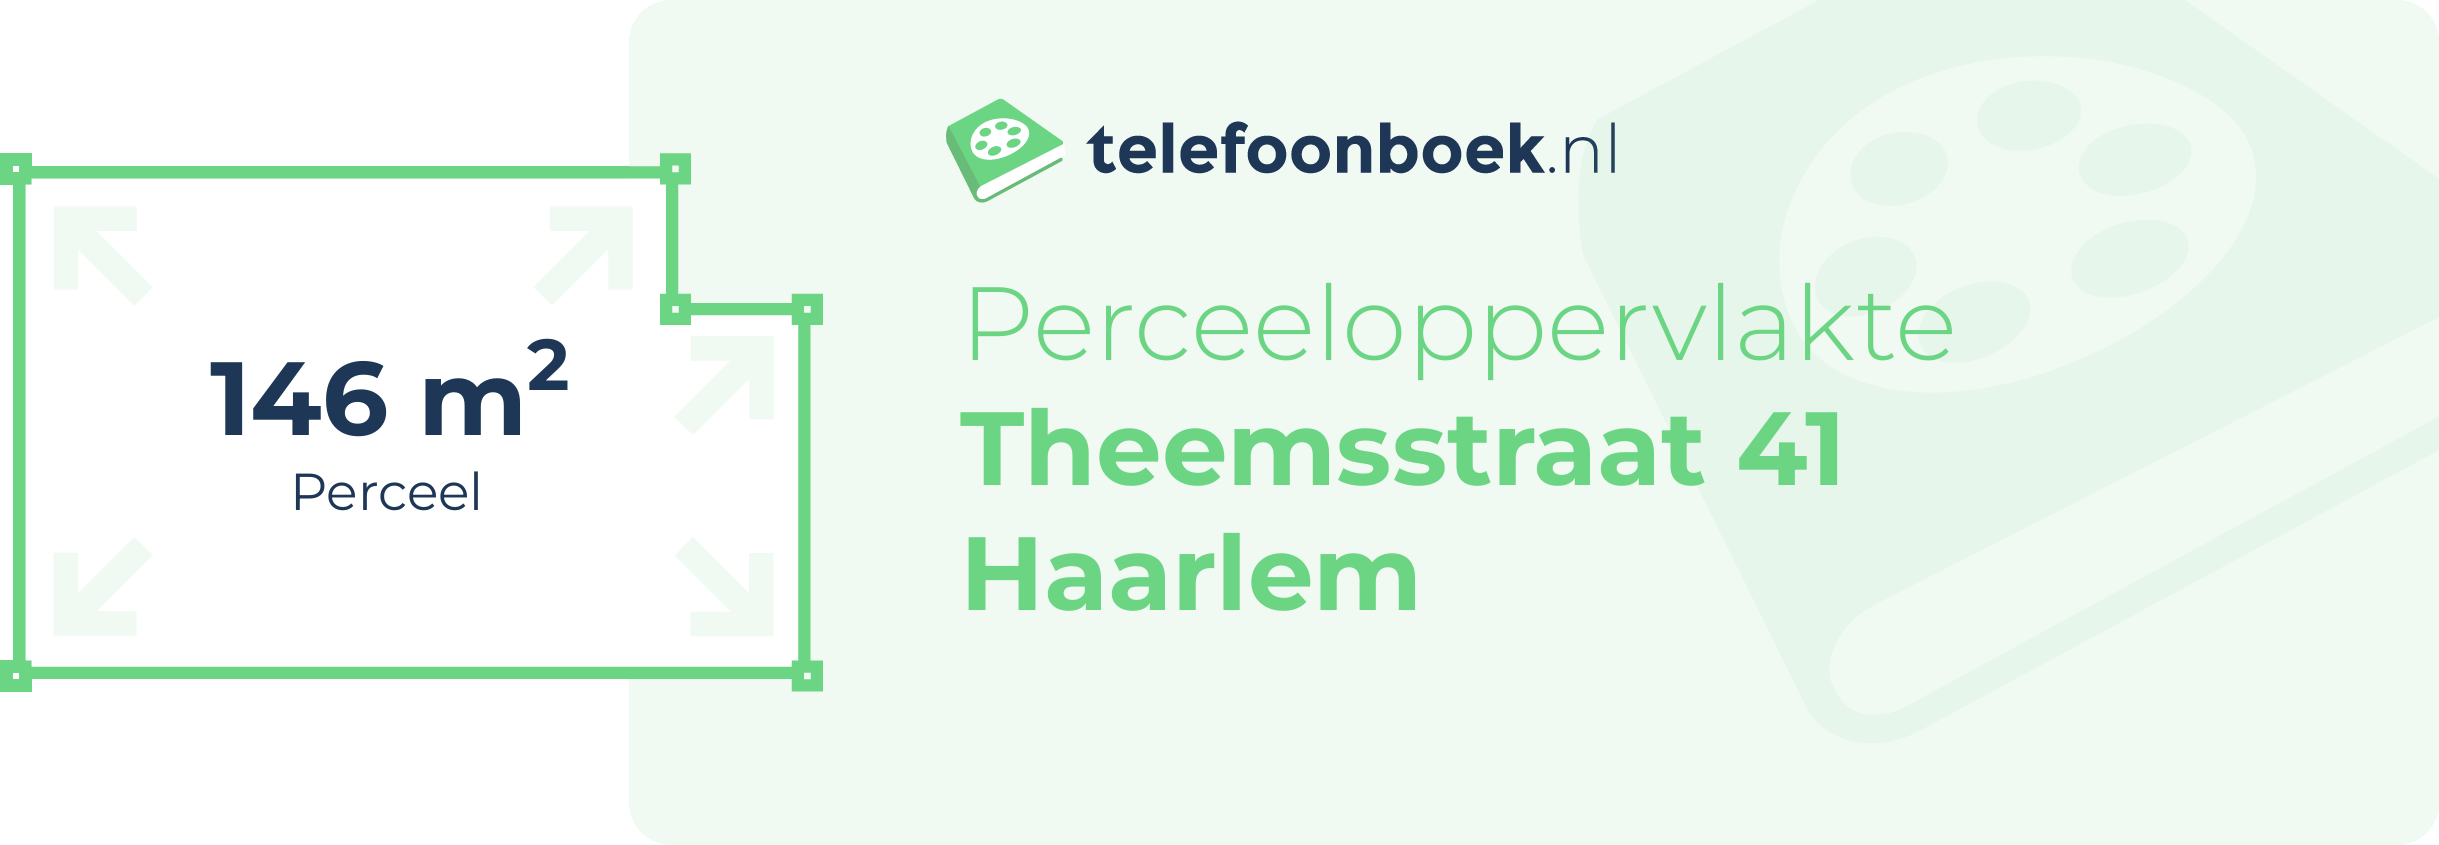 Perceeloppervlakte Theemsstraat 41 Haarlem